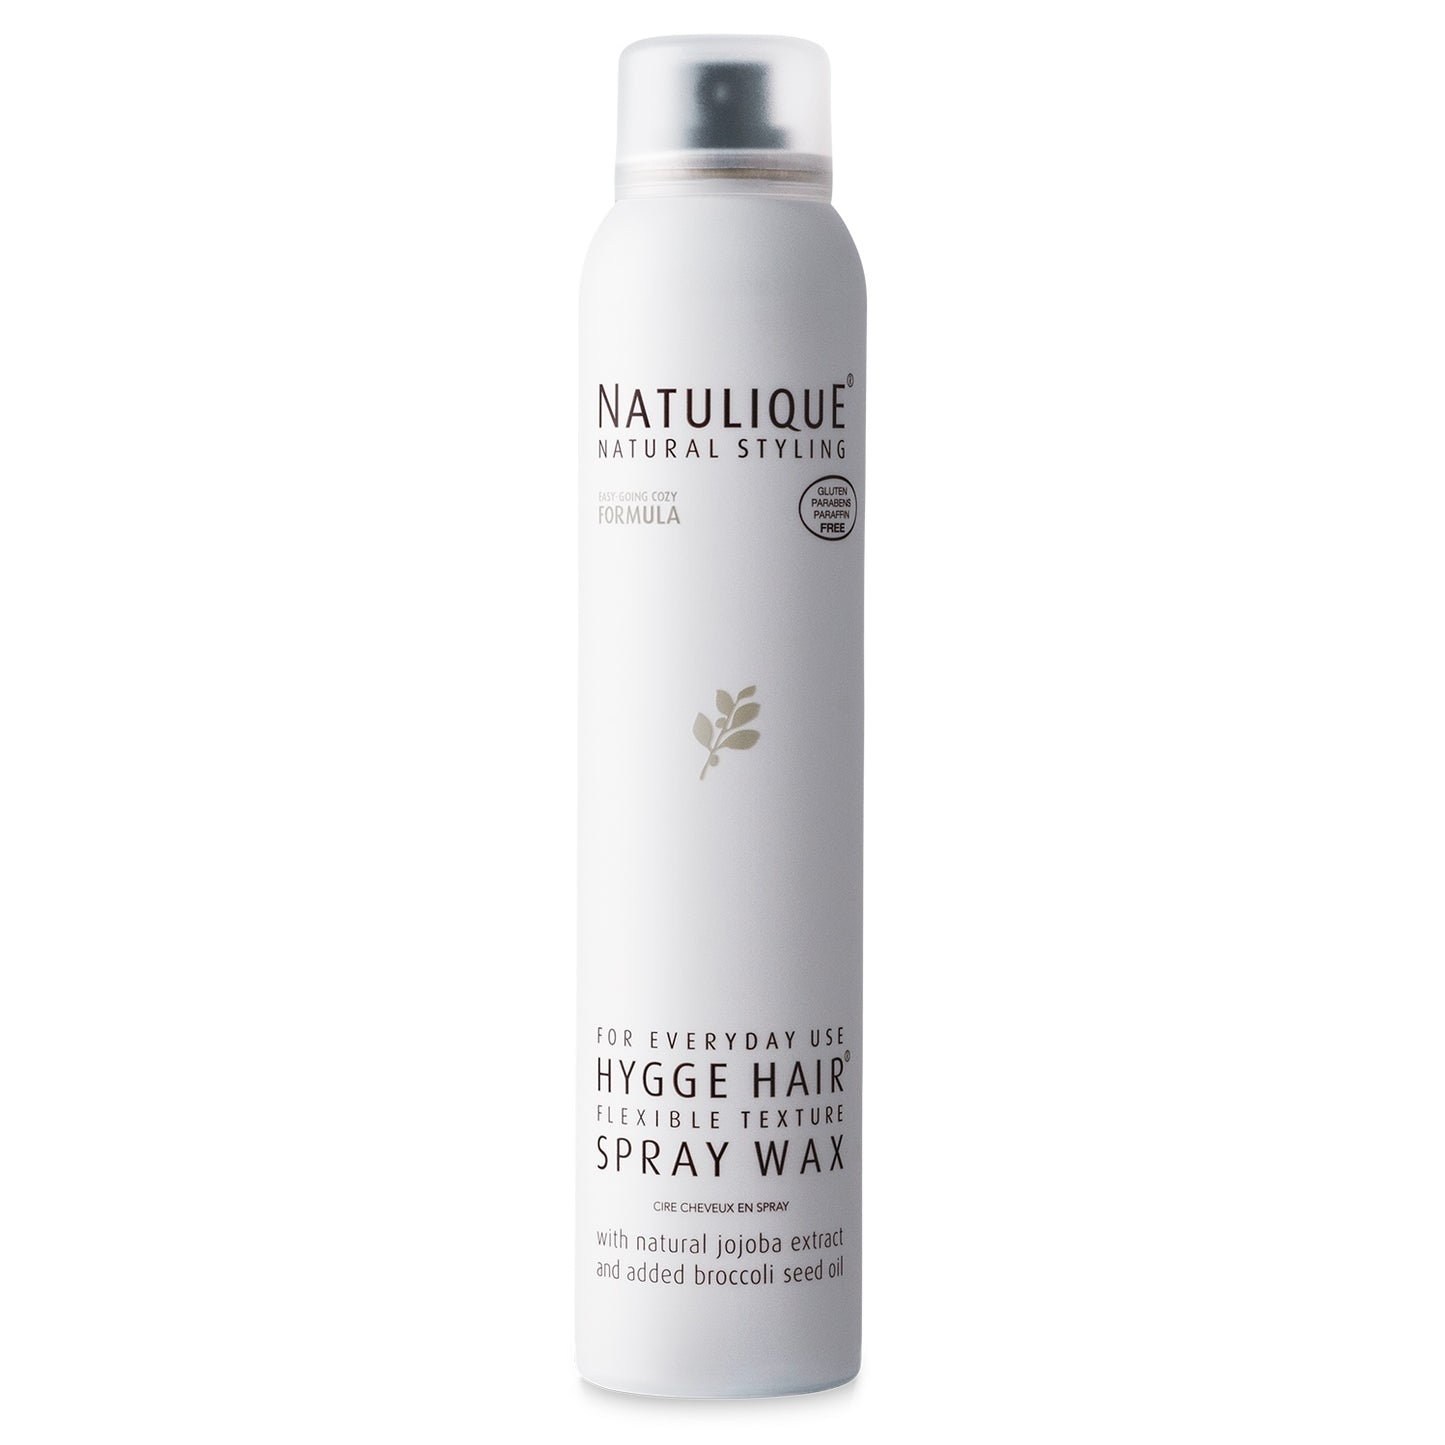 Natulique Hygge Hair Spray Wax